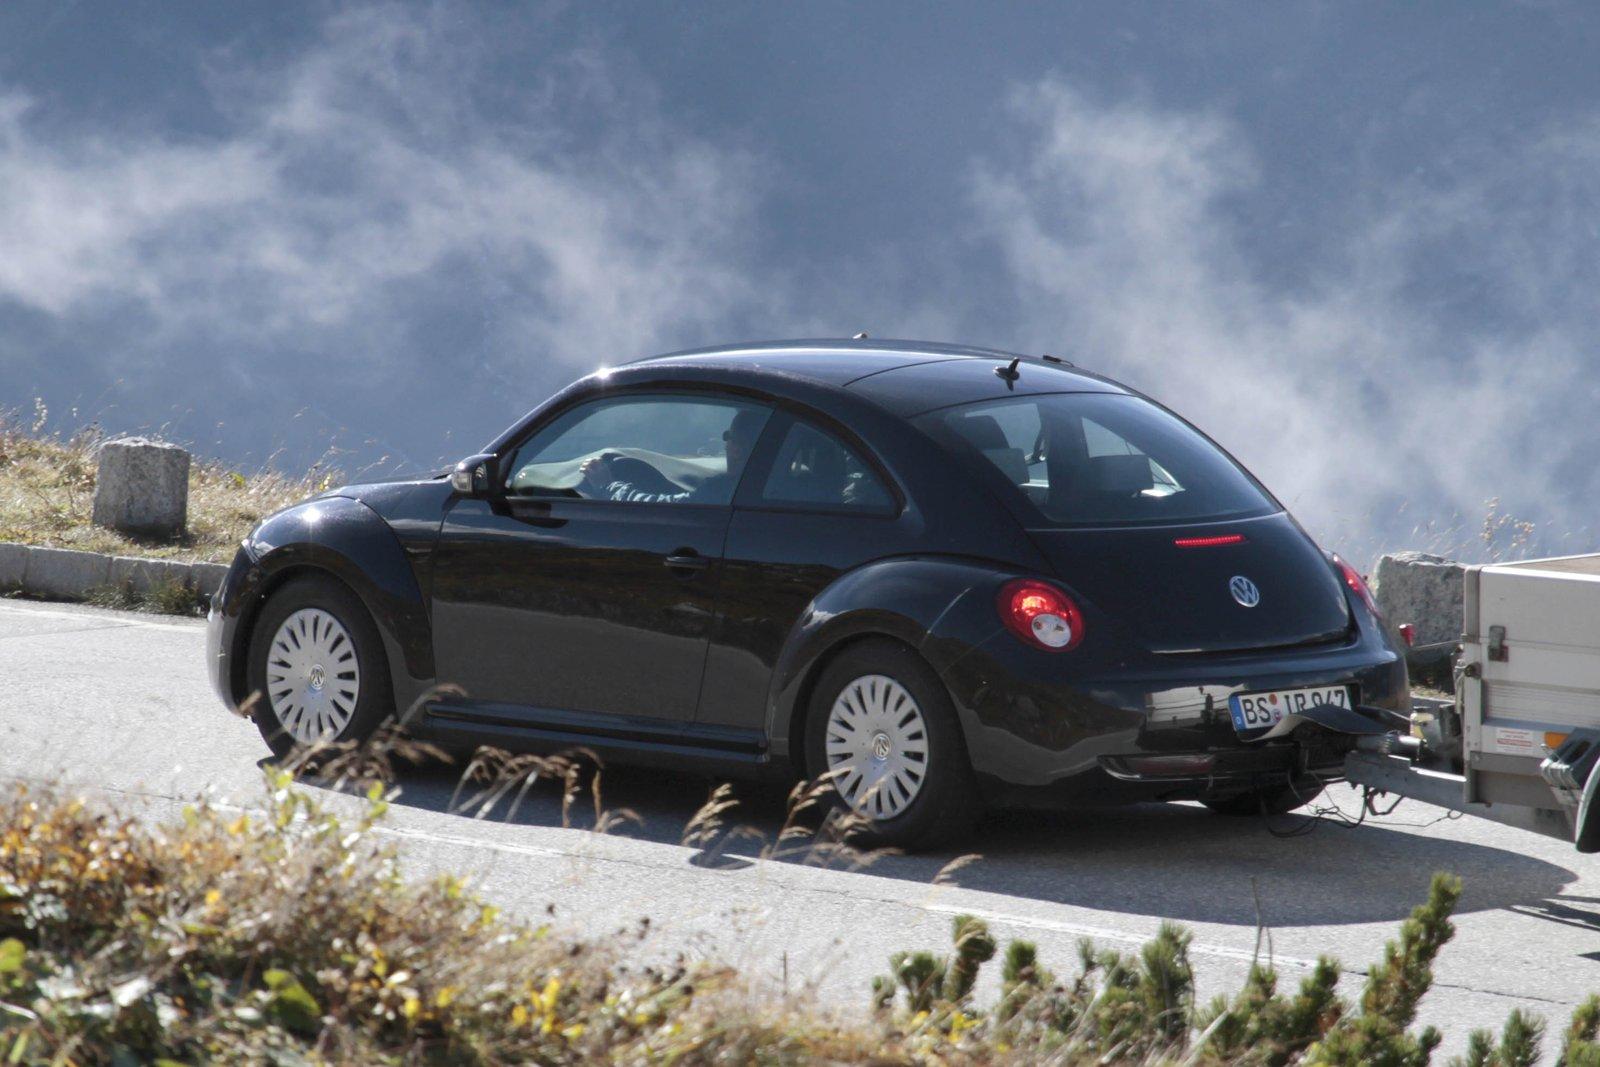 2012 VW Beetle